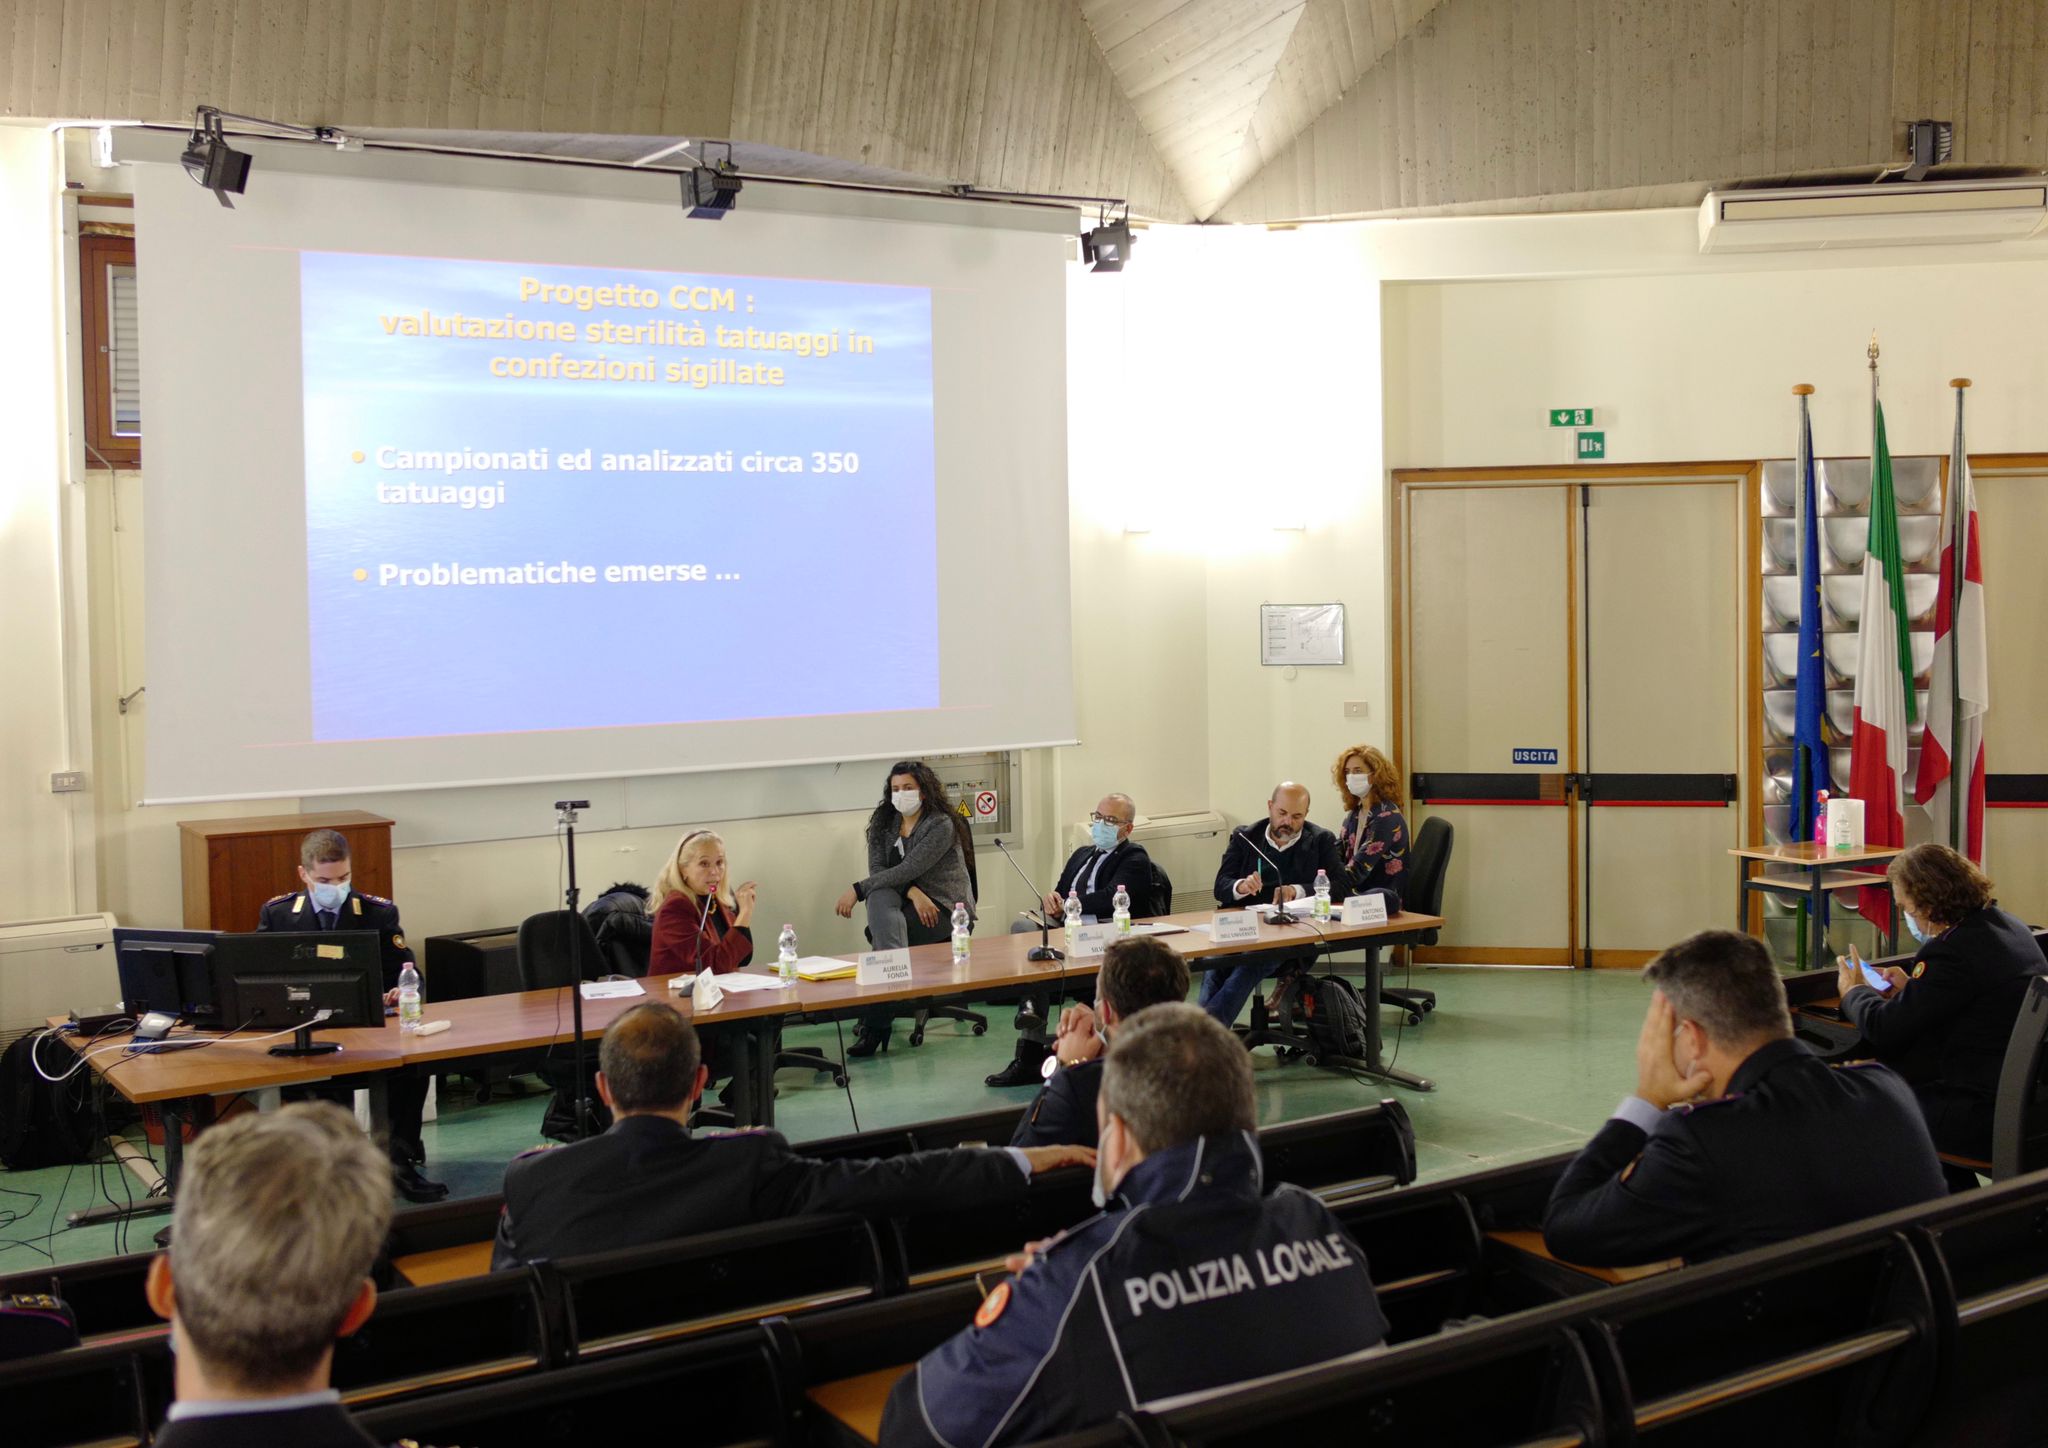 Seminario nazionale a Milano, Ass.Granelli: “Tema chiave tutela economia legale e salute cittadini”